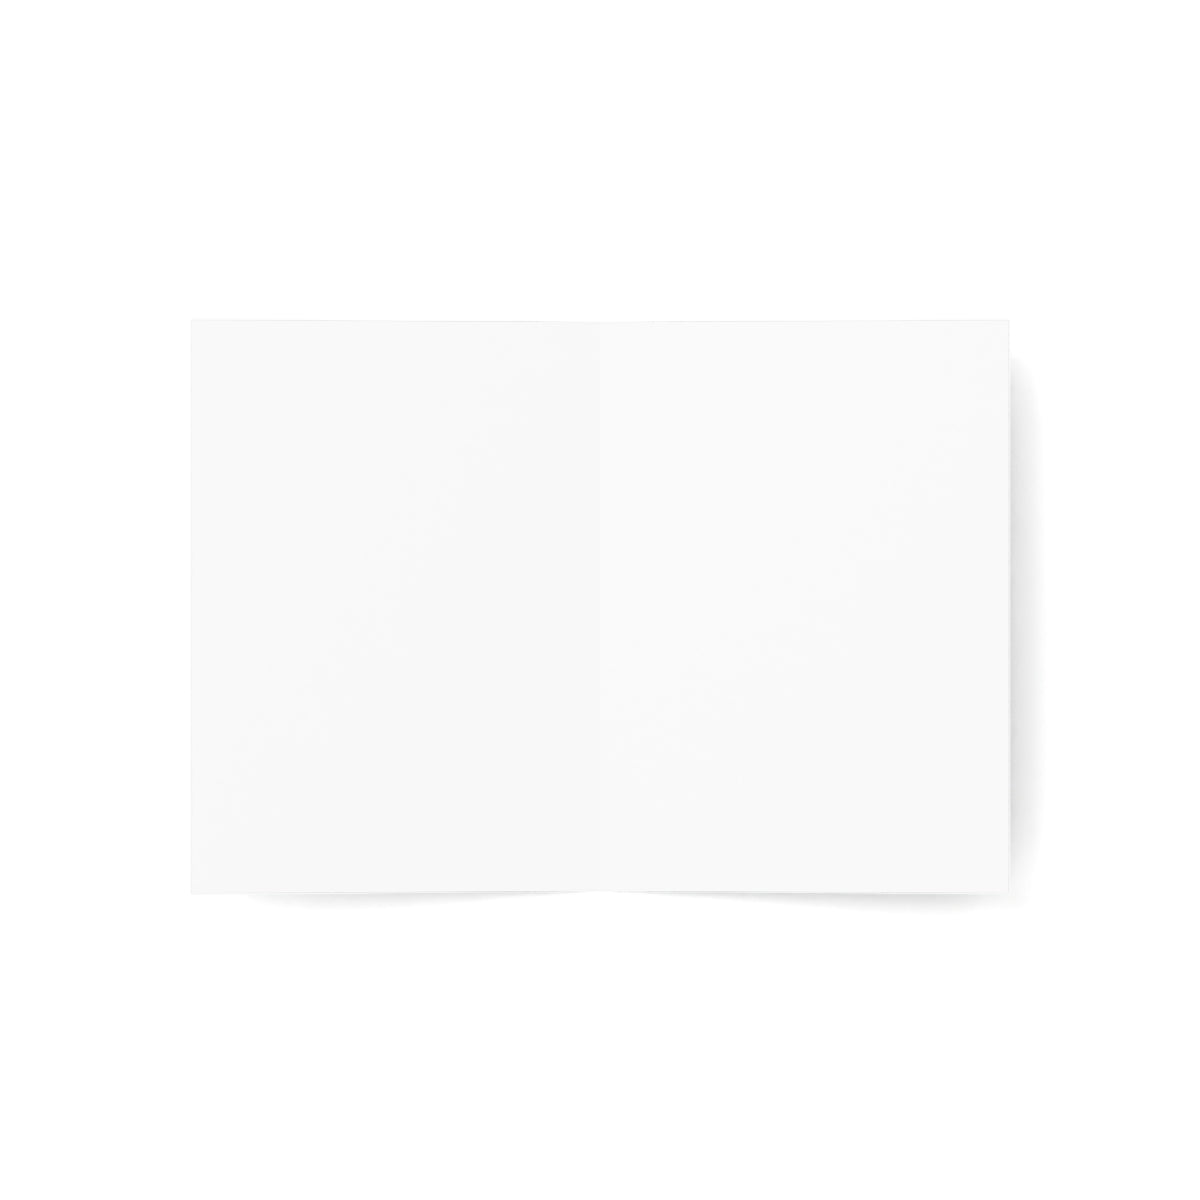 Bassin d'Arcachon Folded Matte Notecards + Envelopes (10pcs)